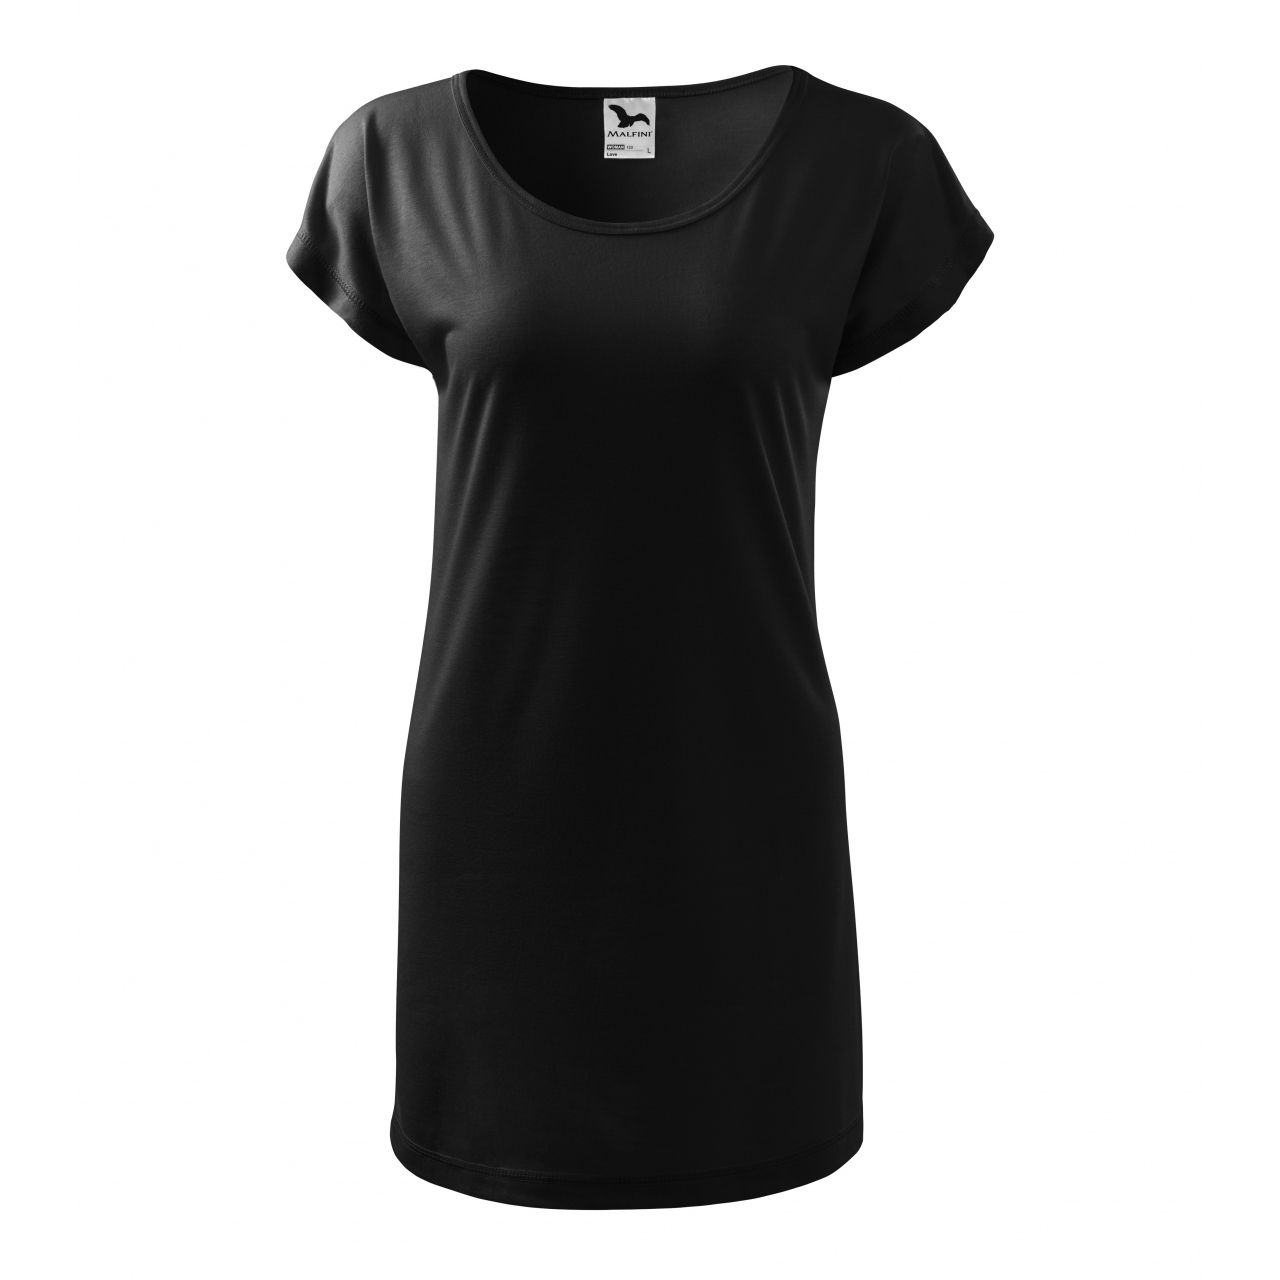 Šaty Malfini Love - černé, XS